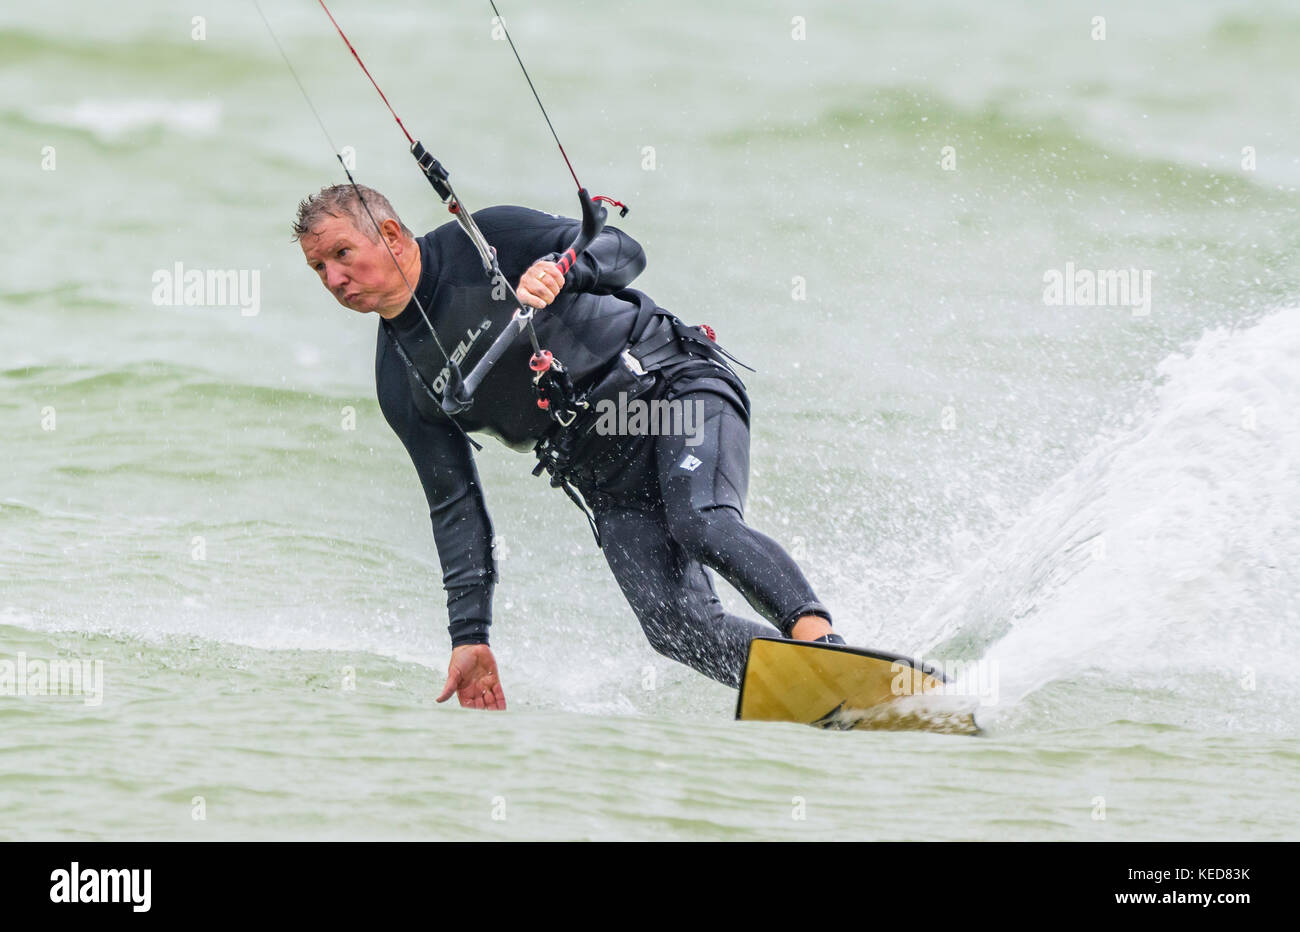 Uomo di eseguire un giro mentre il kitesurfing in mare in una giornata di vento. Kitesurfer maschio sull'oceano. Foto Stock